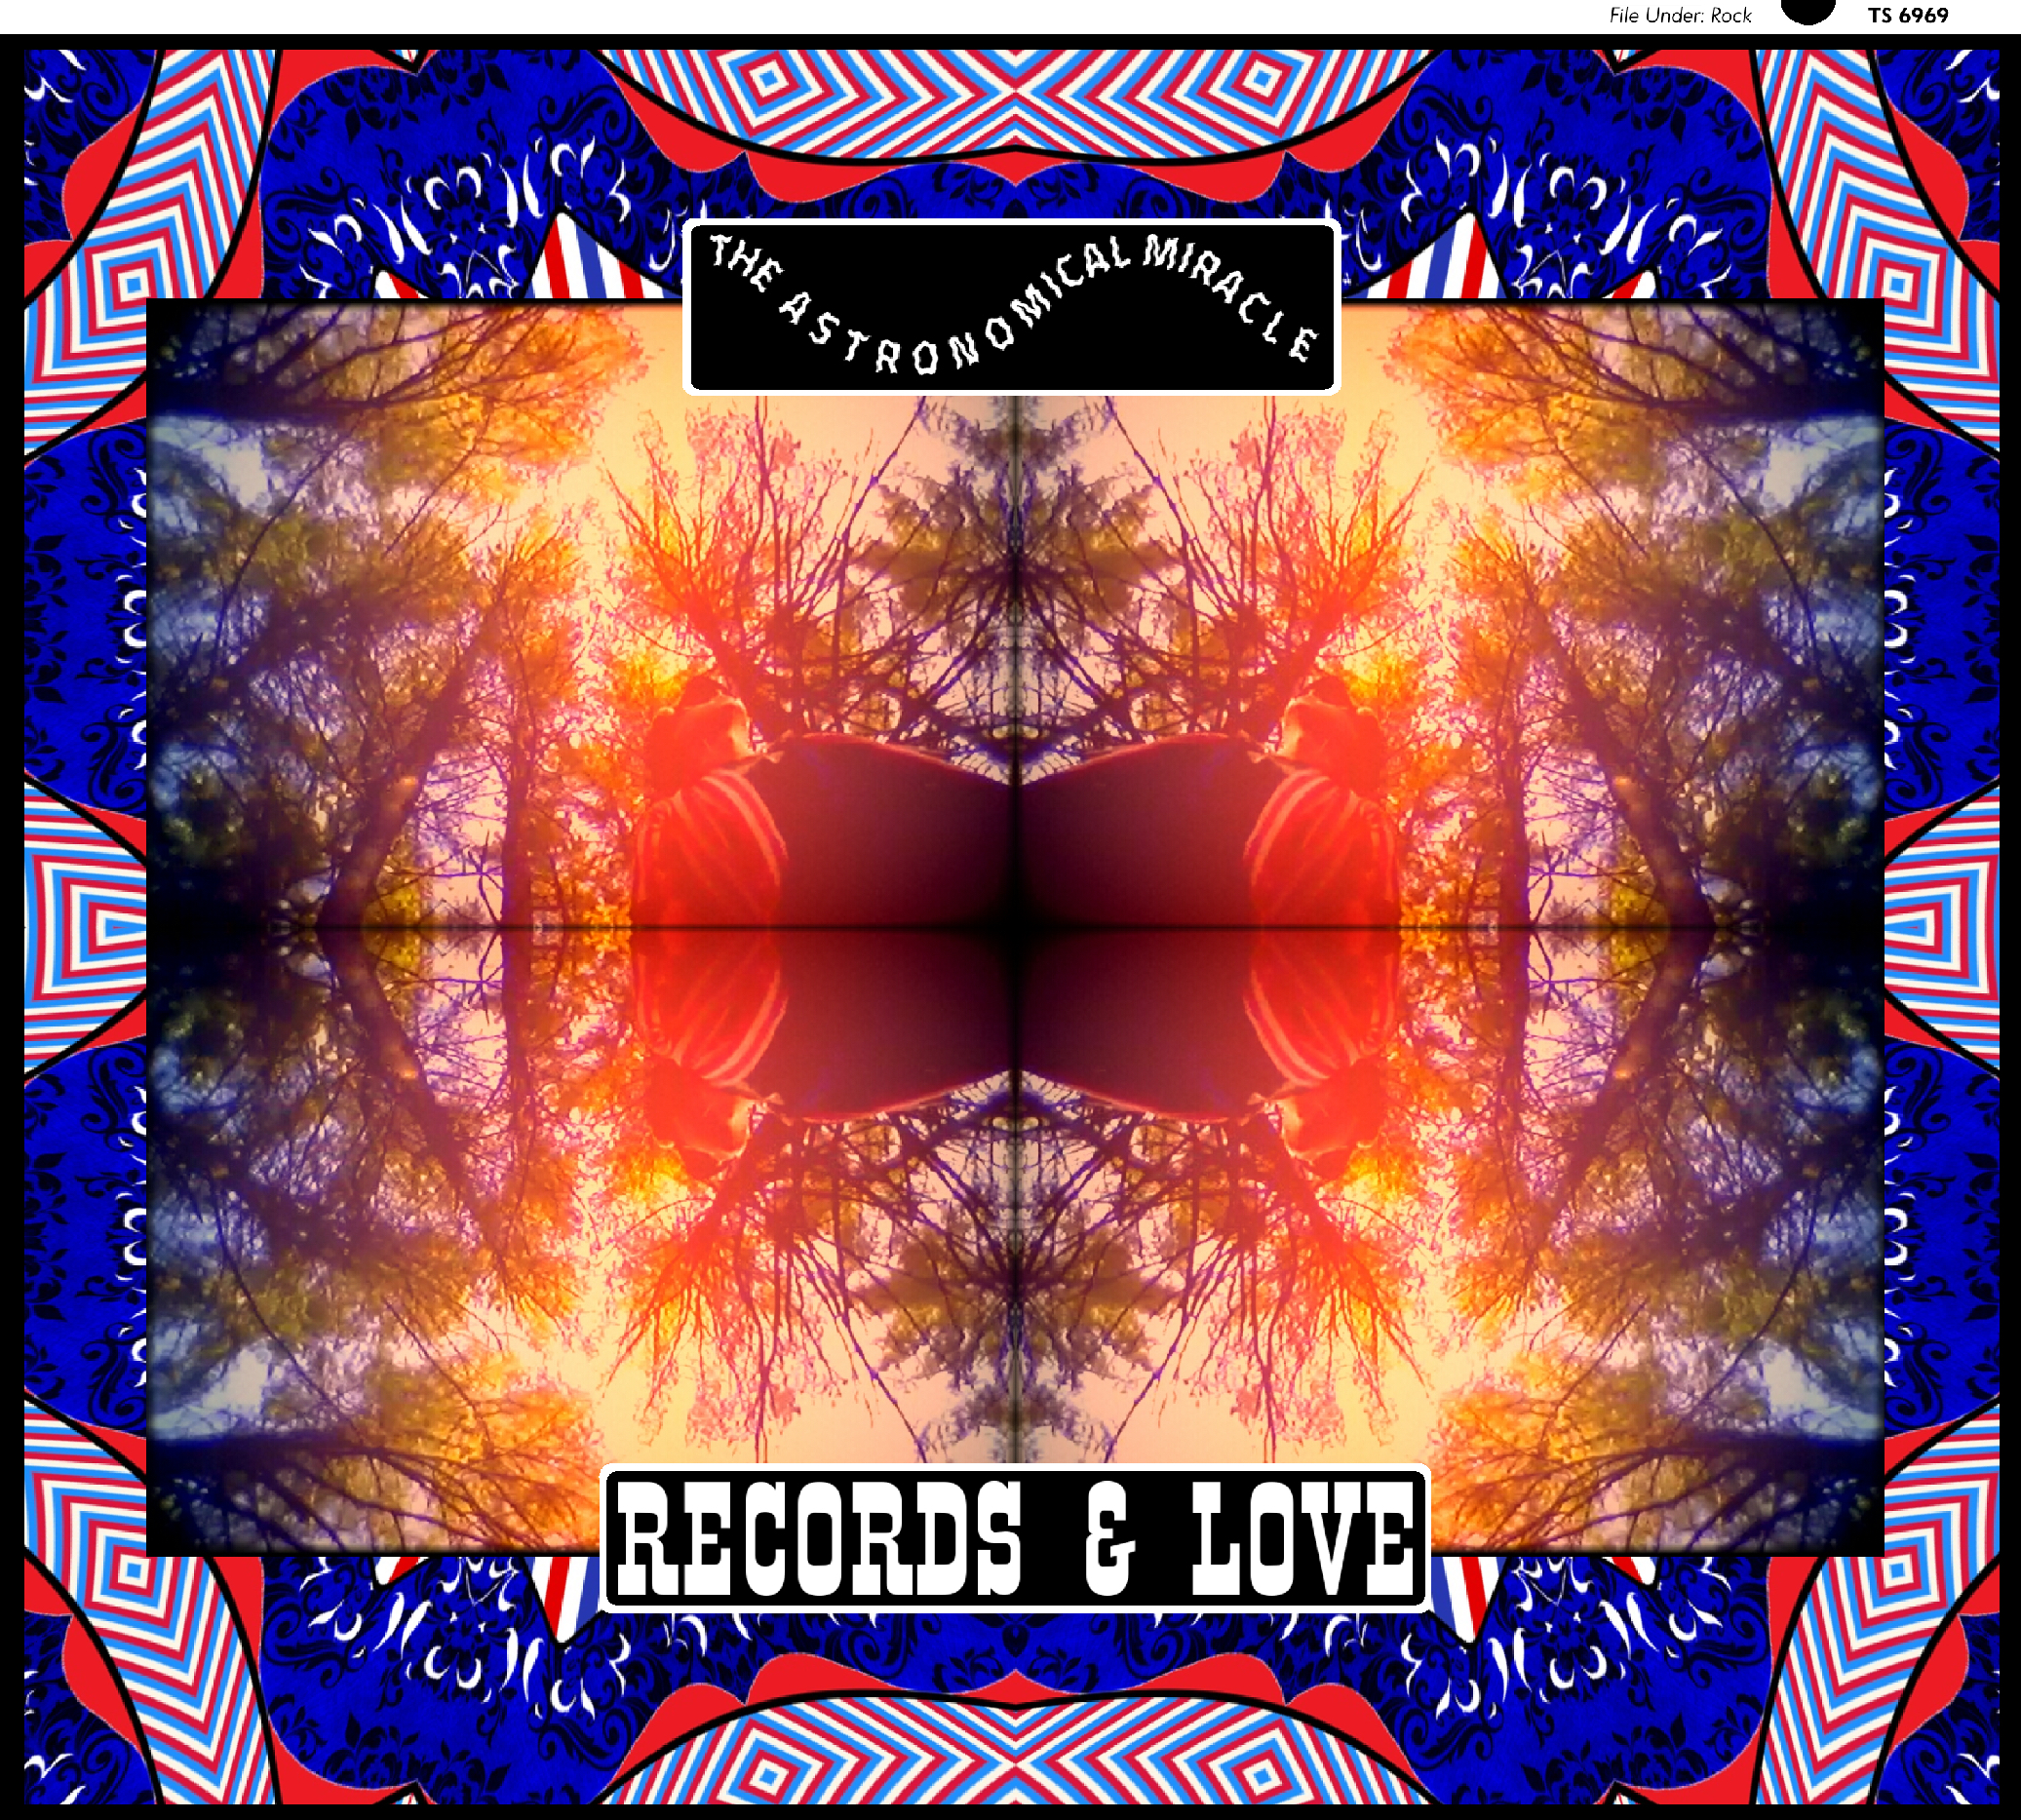 Records & Love Album Cover